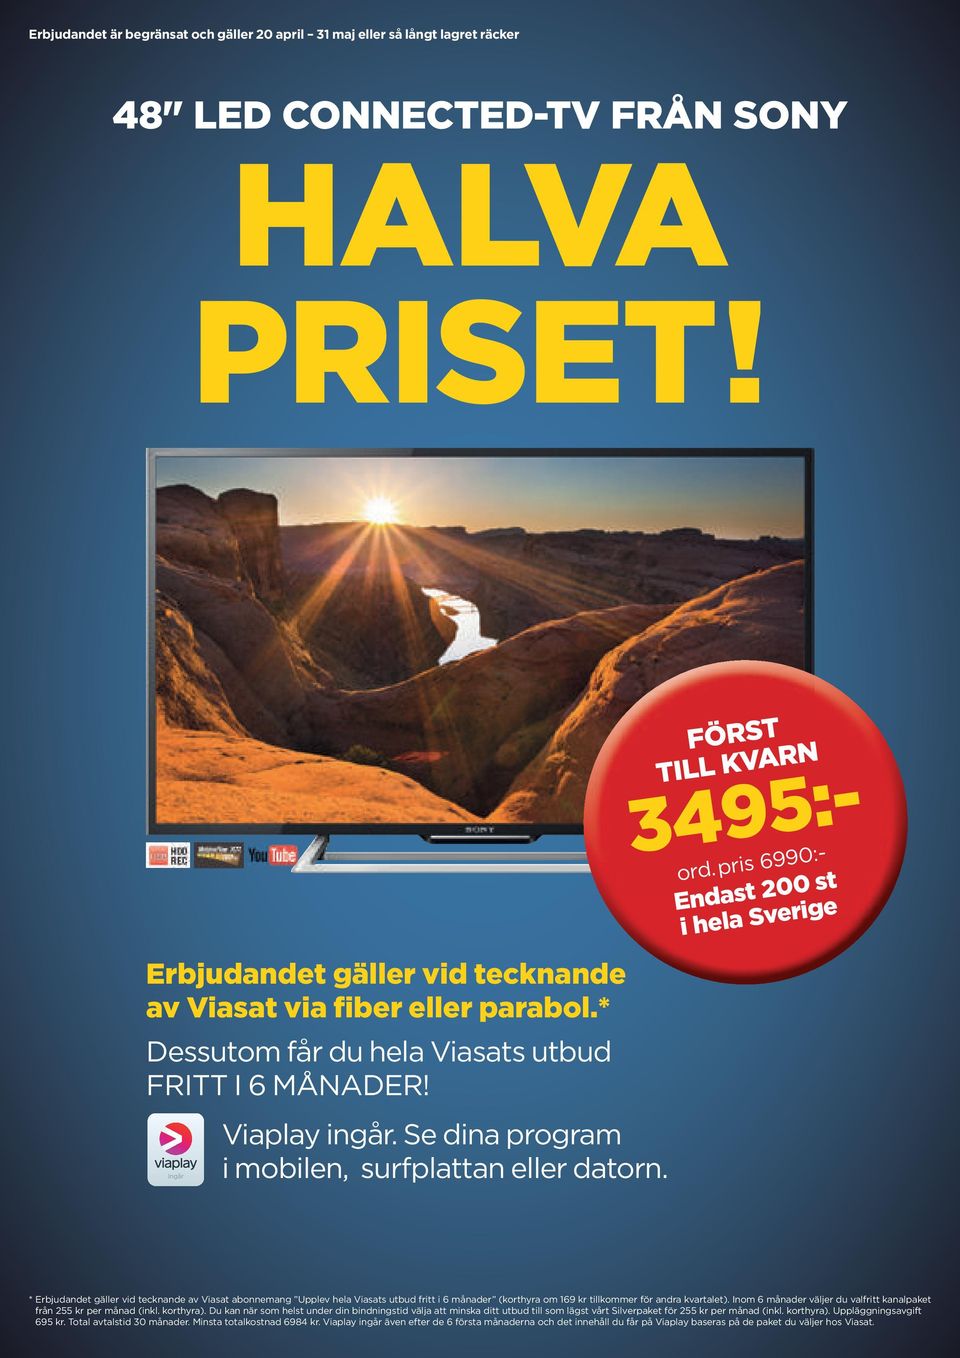 pris 6990:- Endast 200 st i hela Sverige 14 * Erbjudandet gäller vid tecknande av Viasat abonnemang Upplev hela Viasats utbud fritt i 6 månader (korthyra om 169 kr tillkommer för andra kvartalet).